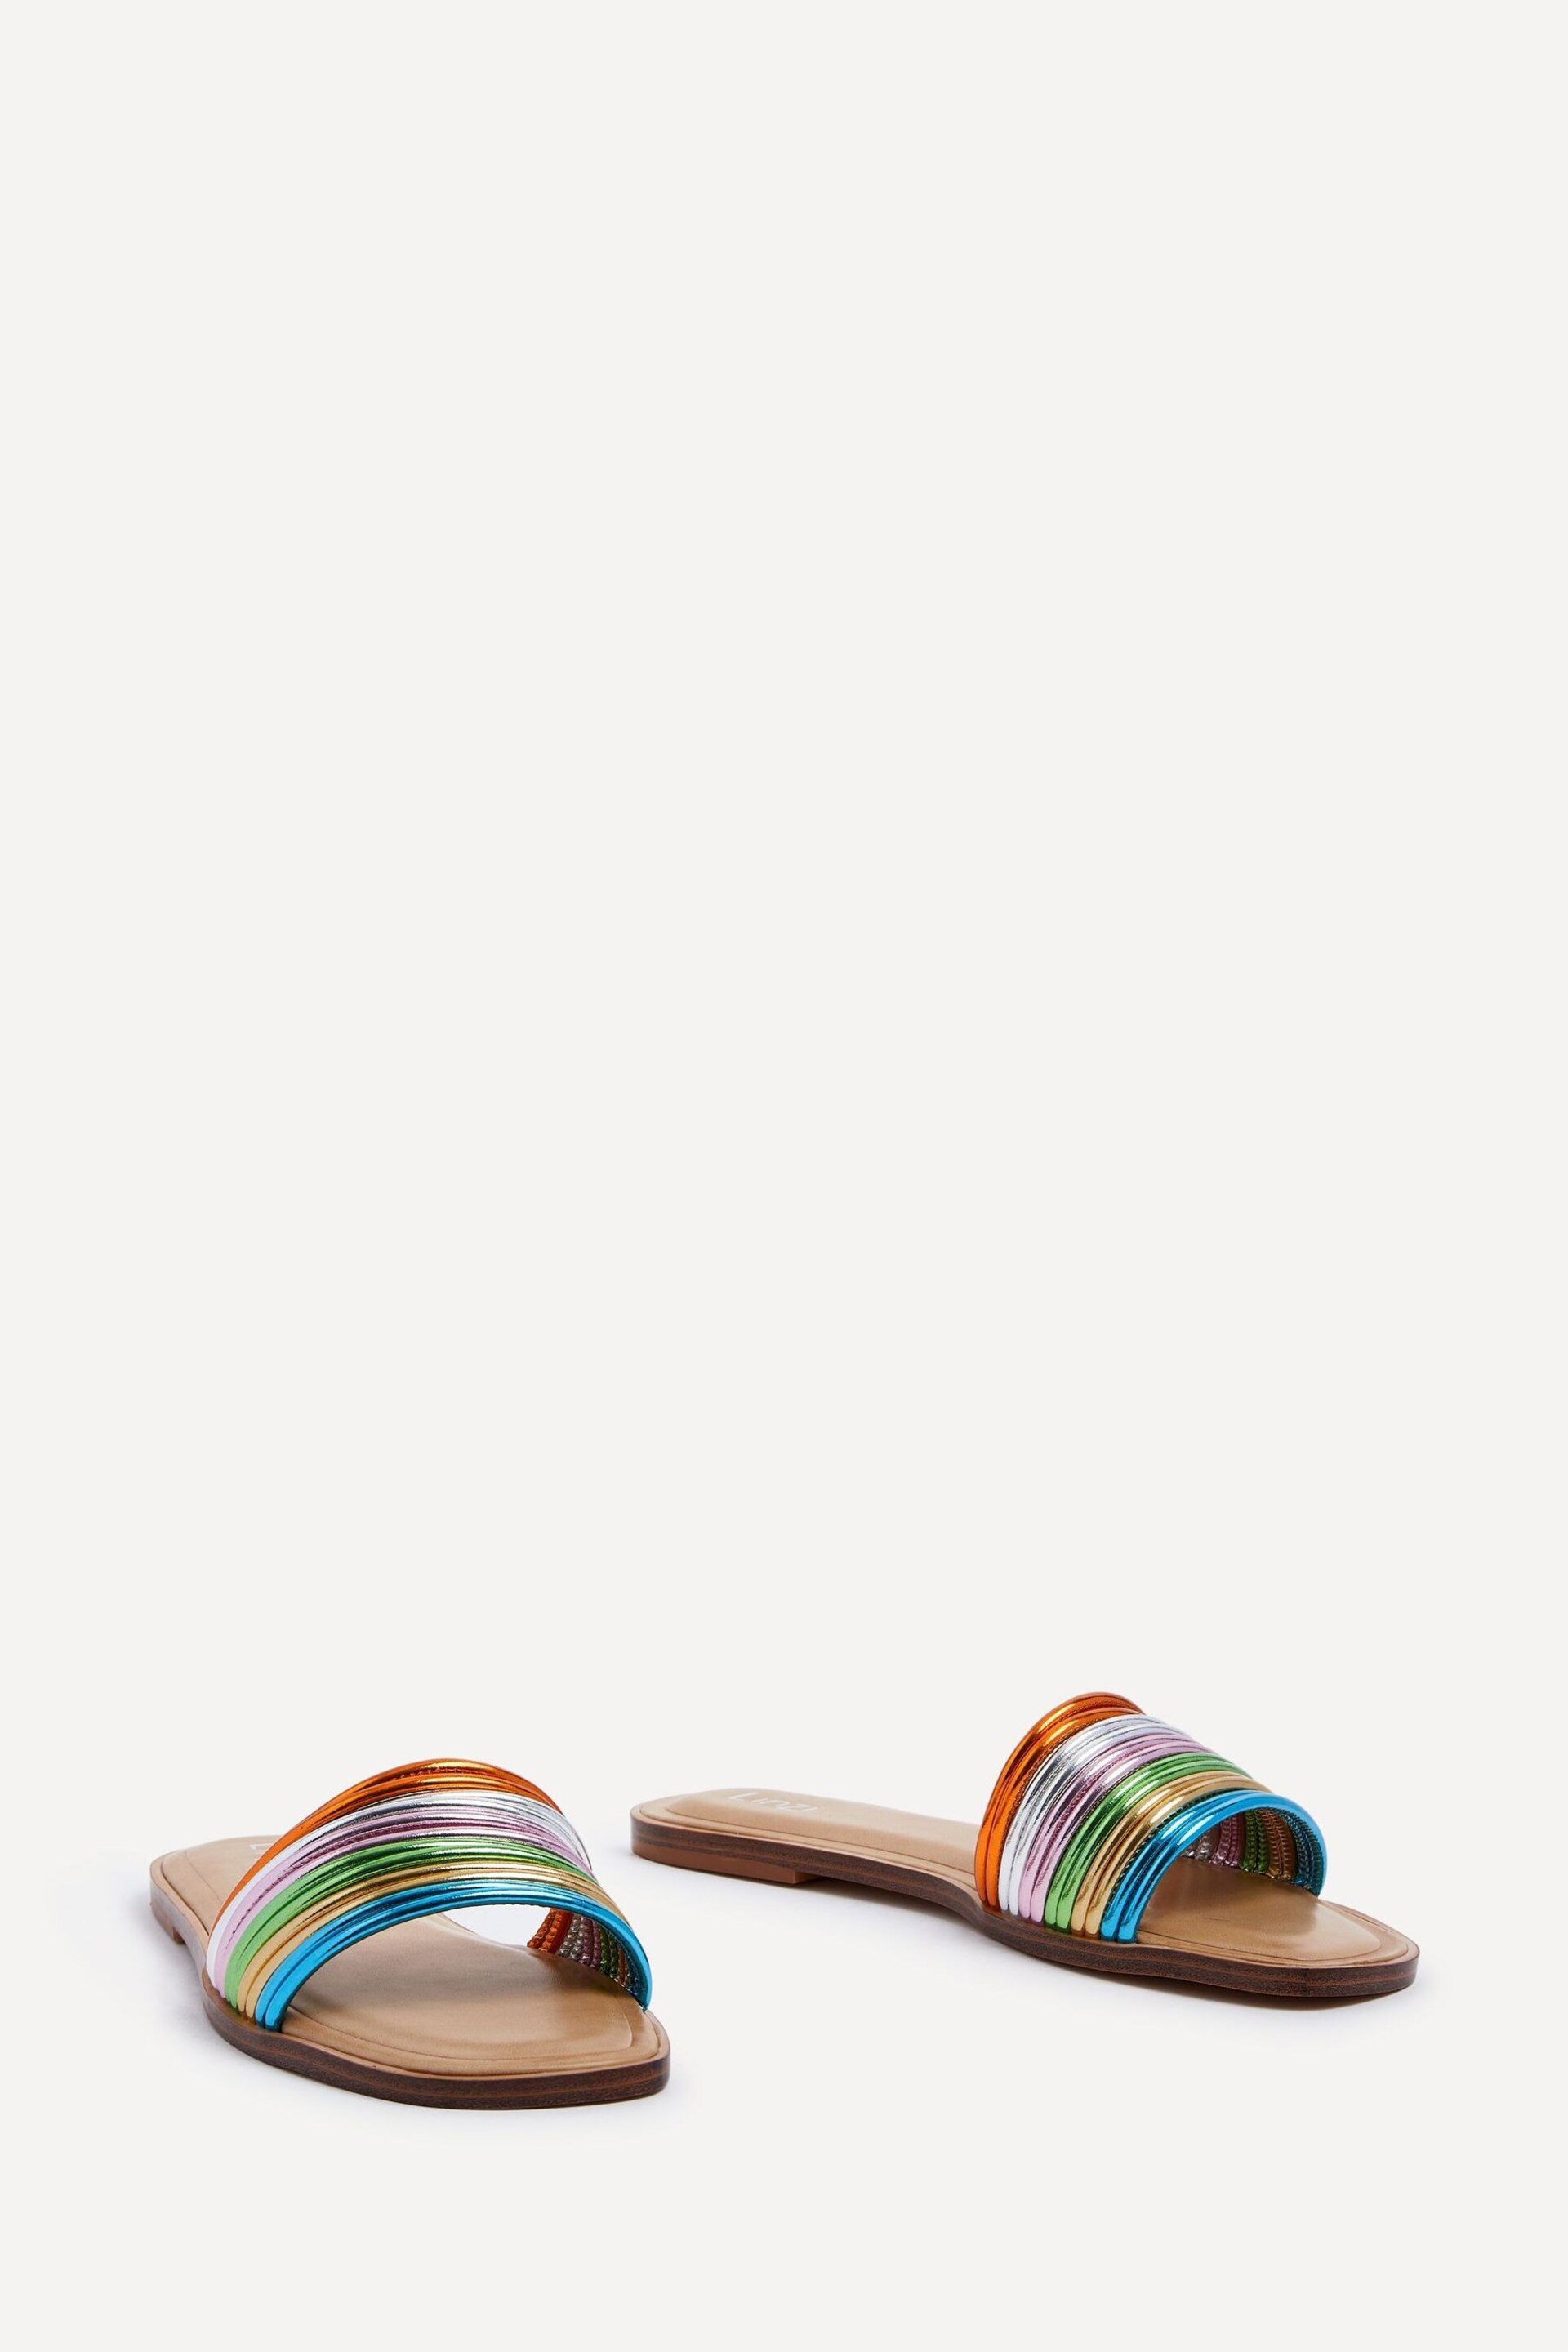 Linzi Green Utopia Multi Coloured Strappy Flat Sandals - Image 4 of 5